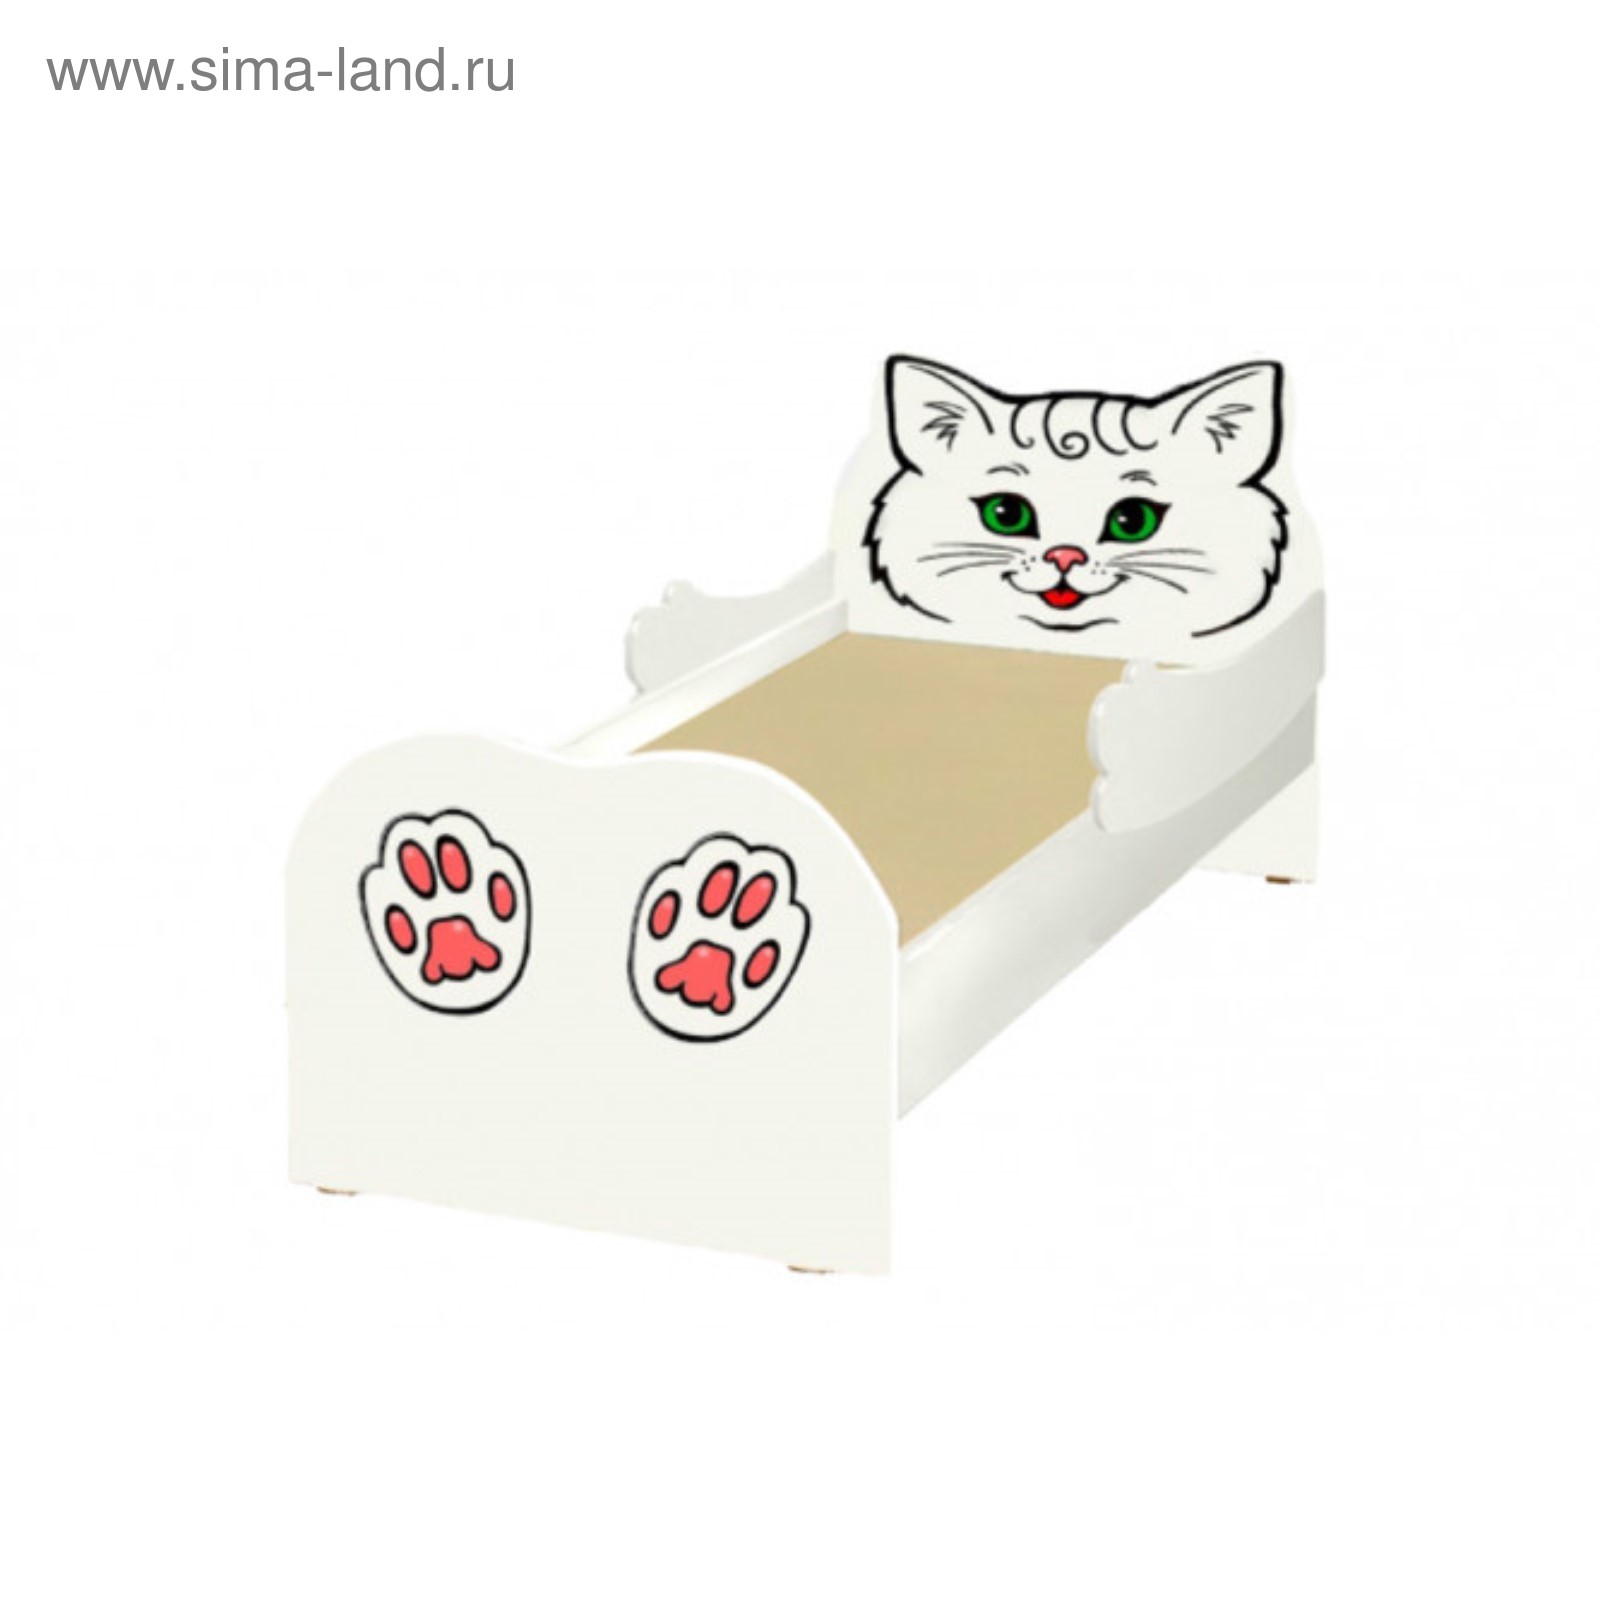 Кровать в виде кошки